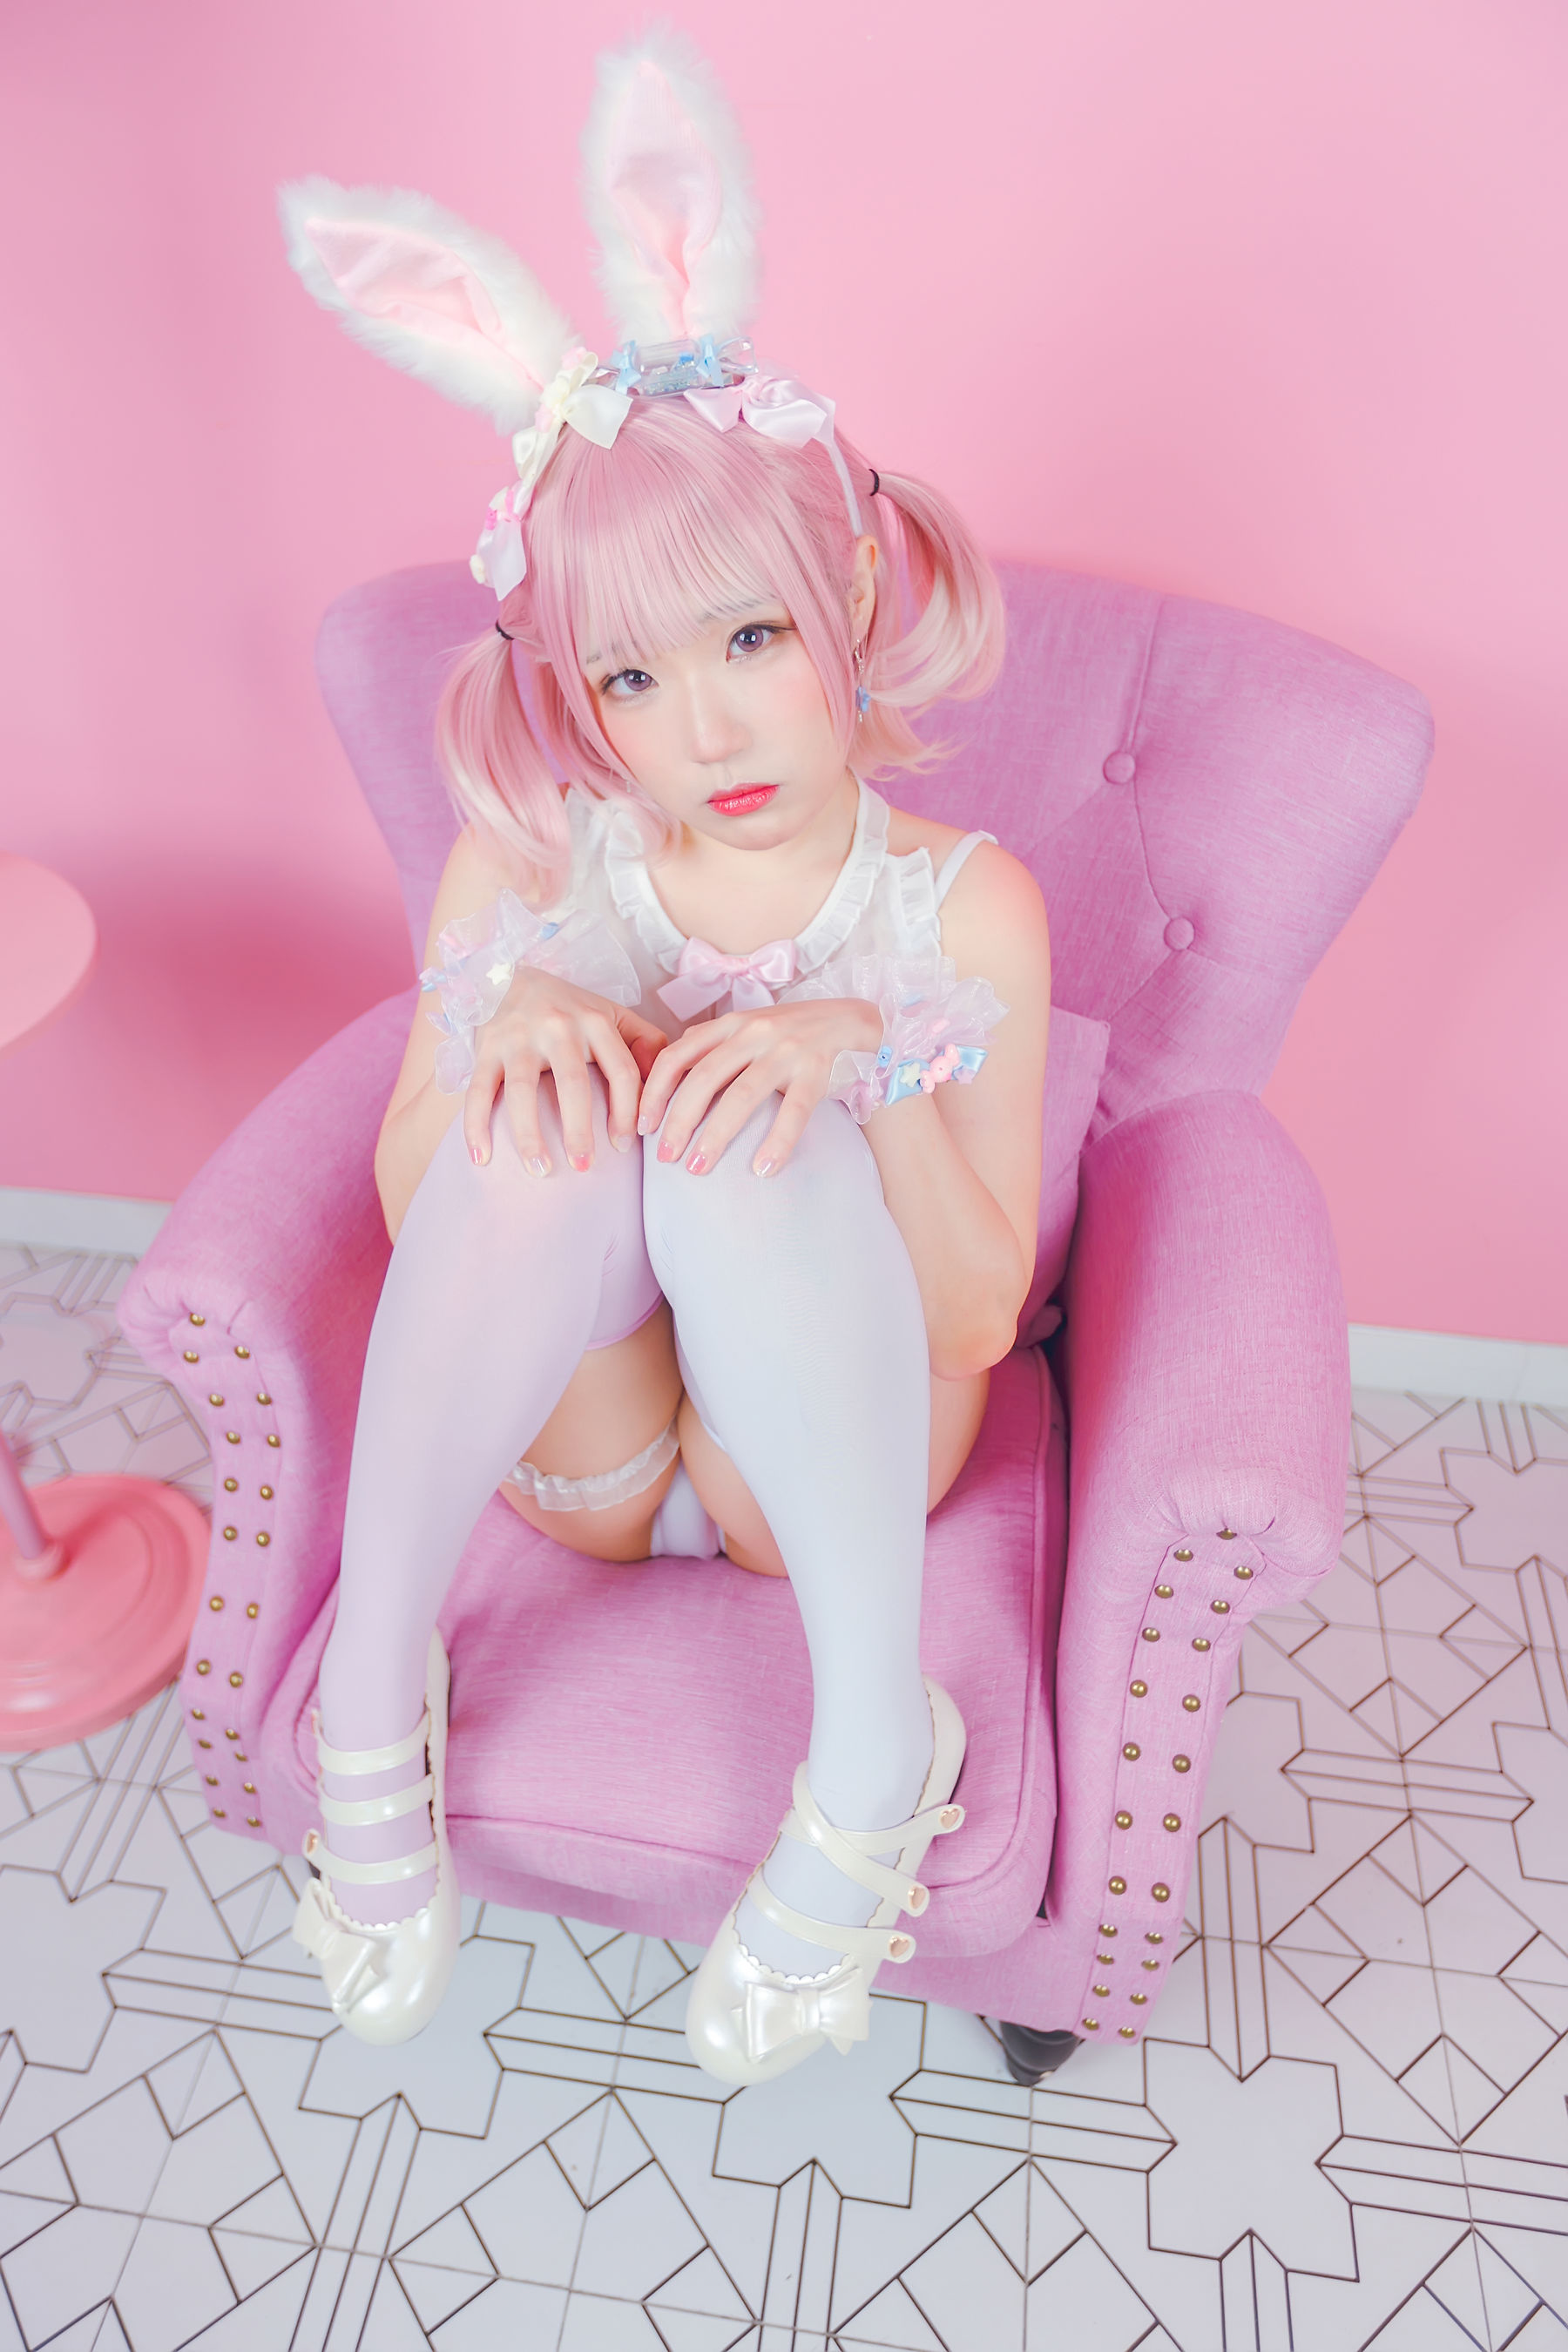 [网红COSER写真] 动漫博主Mime弥美 - 白粉色兔女郎